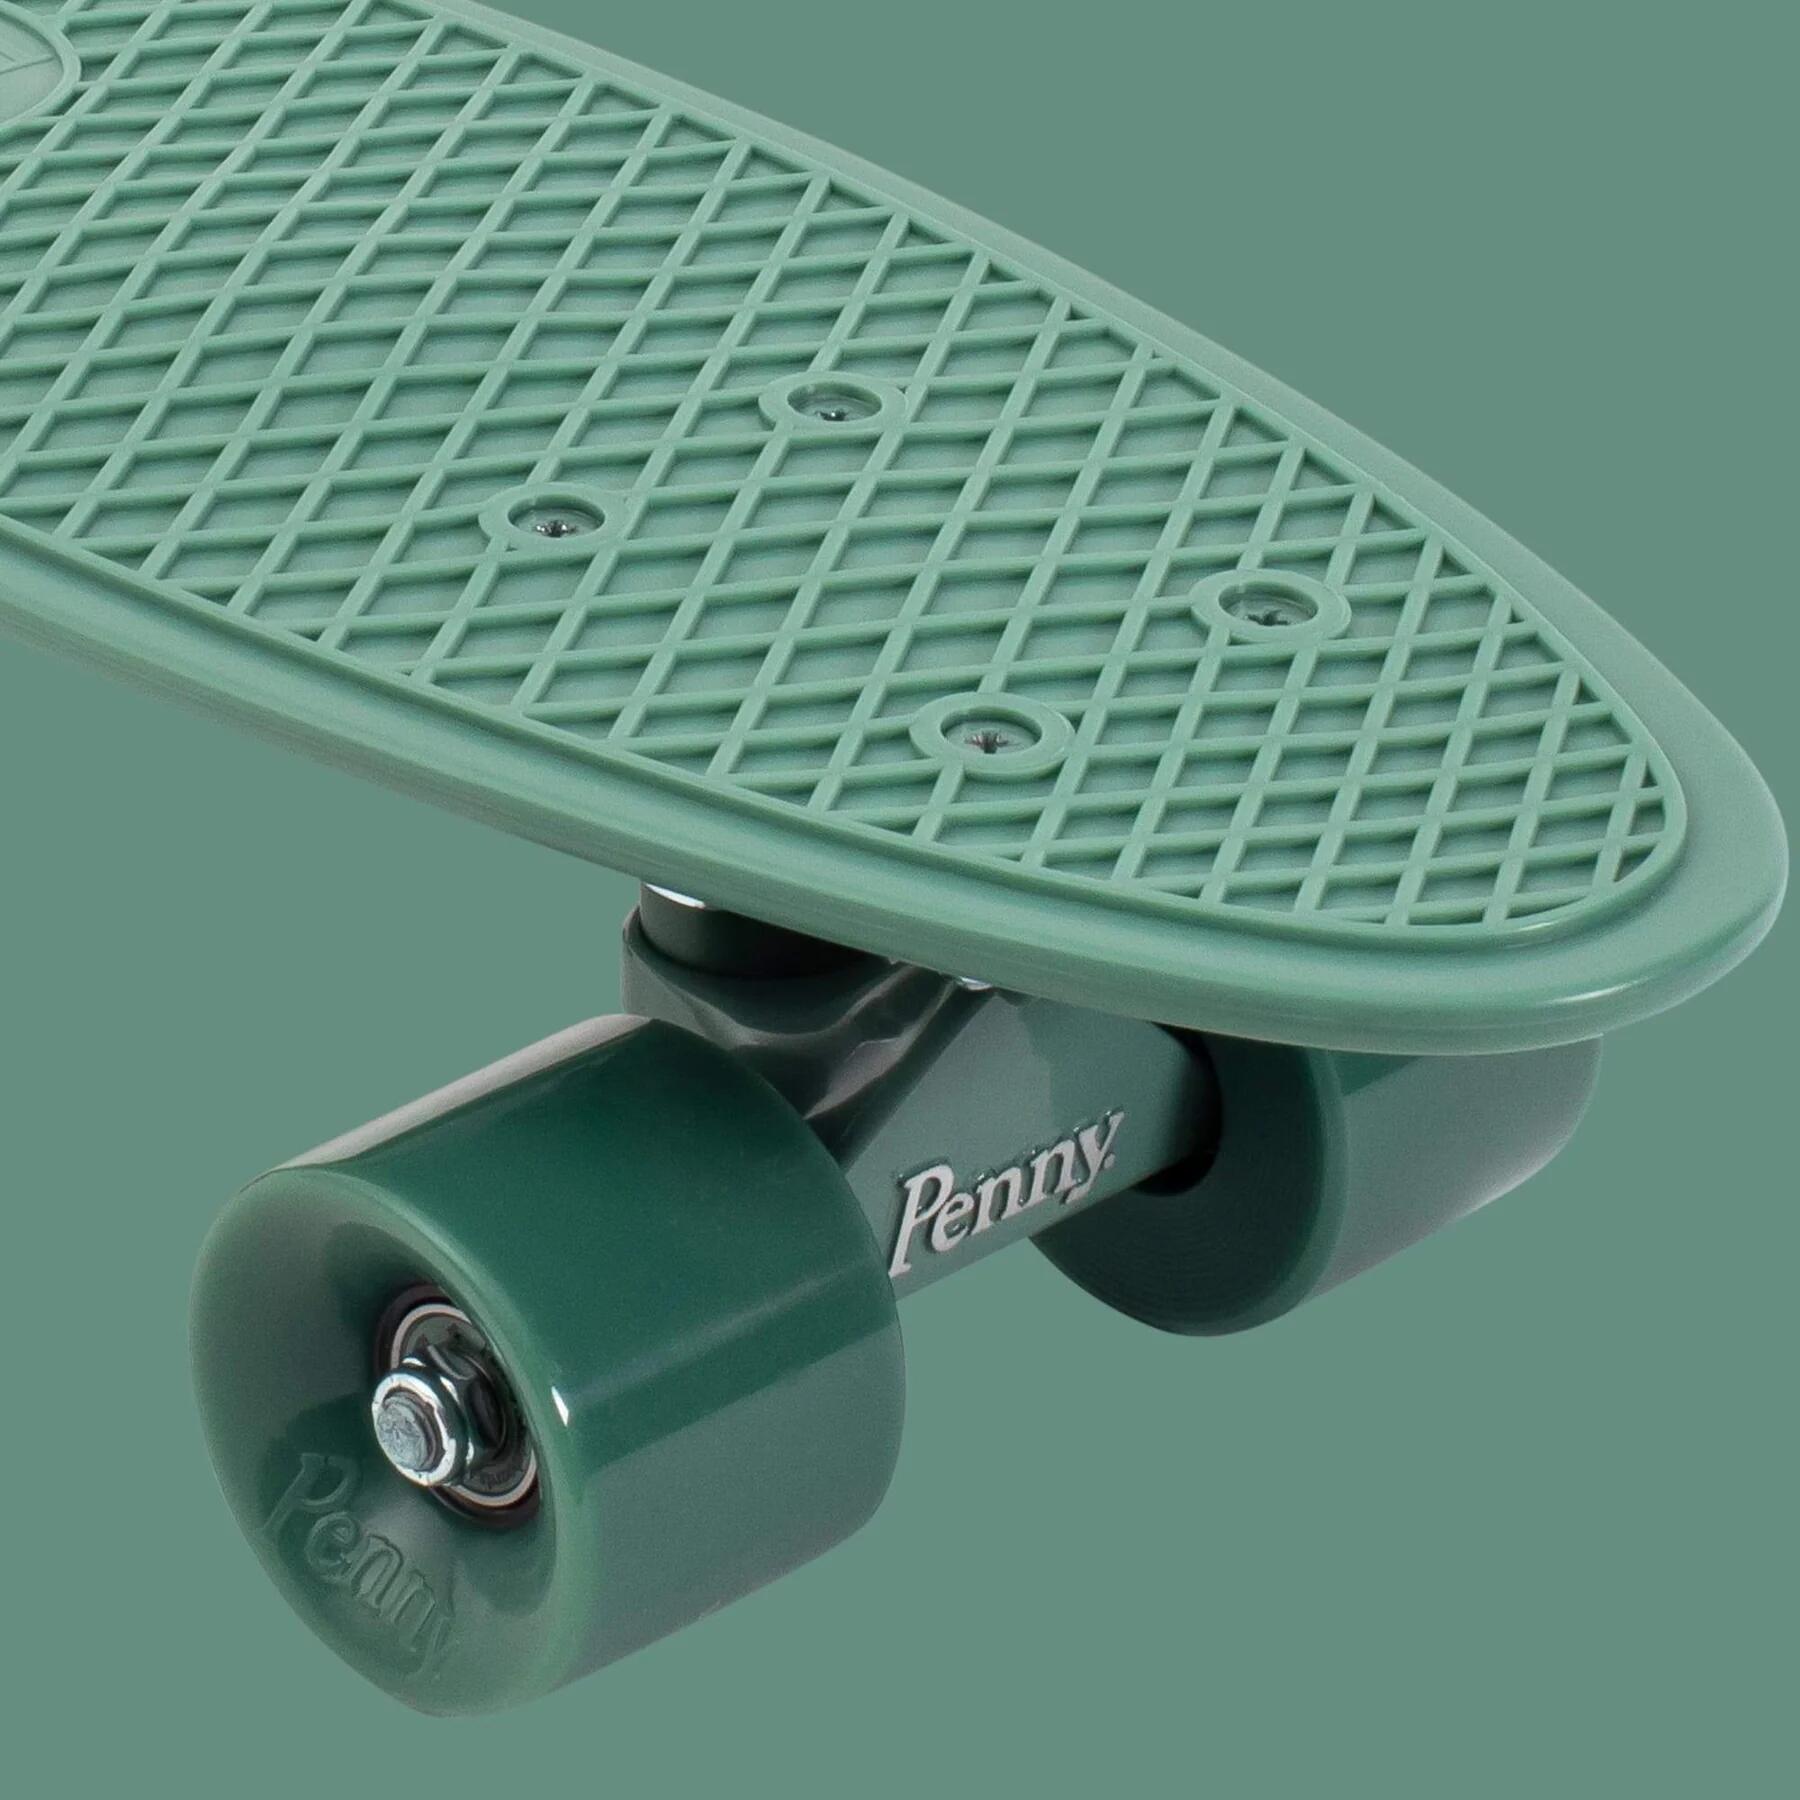 Complete 22inch OG Plastic Skateboard 2/7